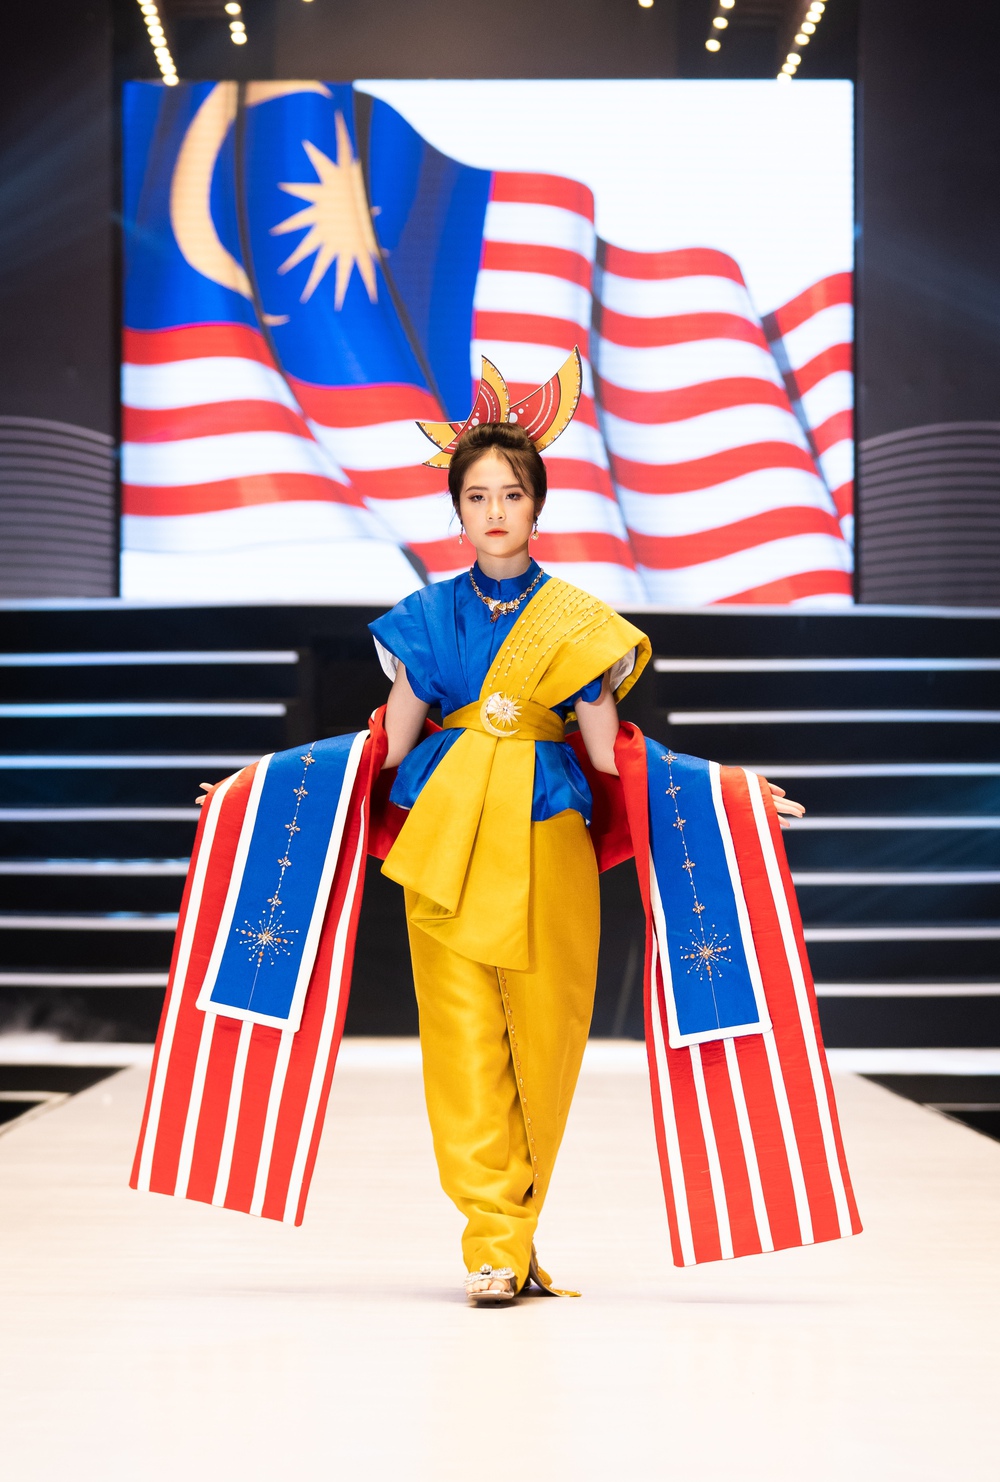 Mẫu nhí Phan Trang Anh gây ấn tượng ở Đại hội Siêu mẫu nhí 2022 - Ảnh 4.